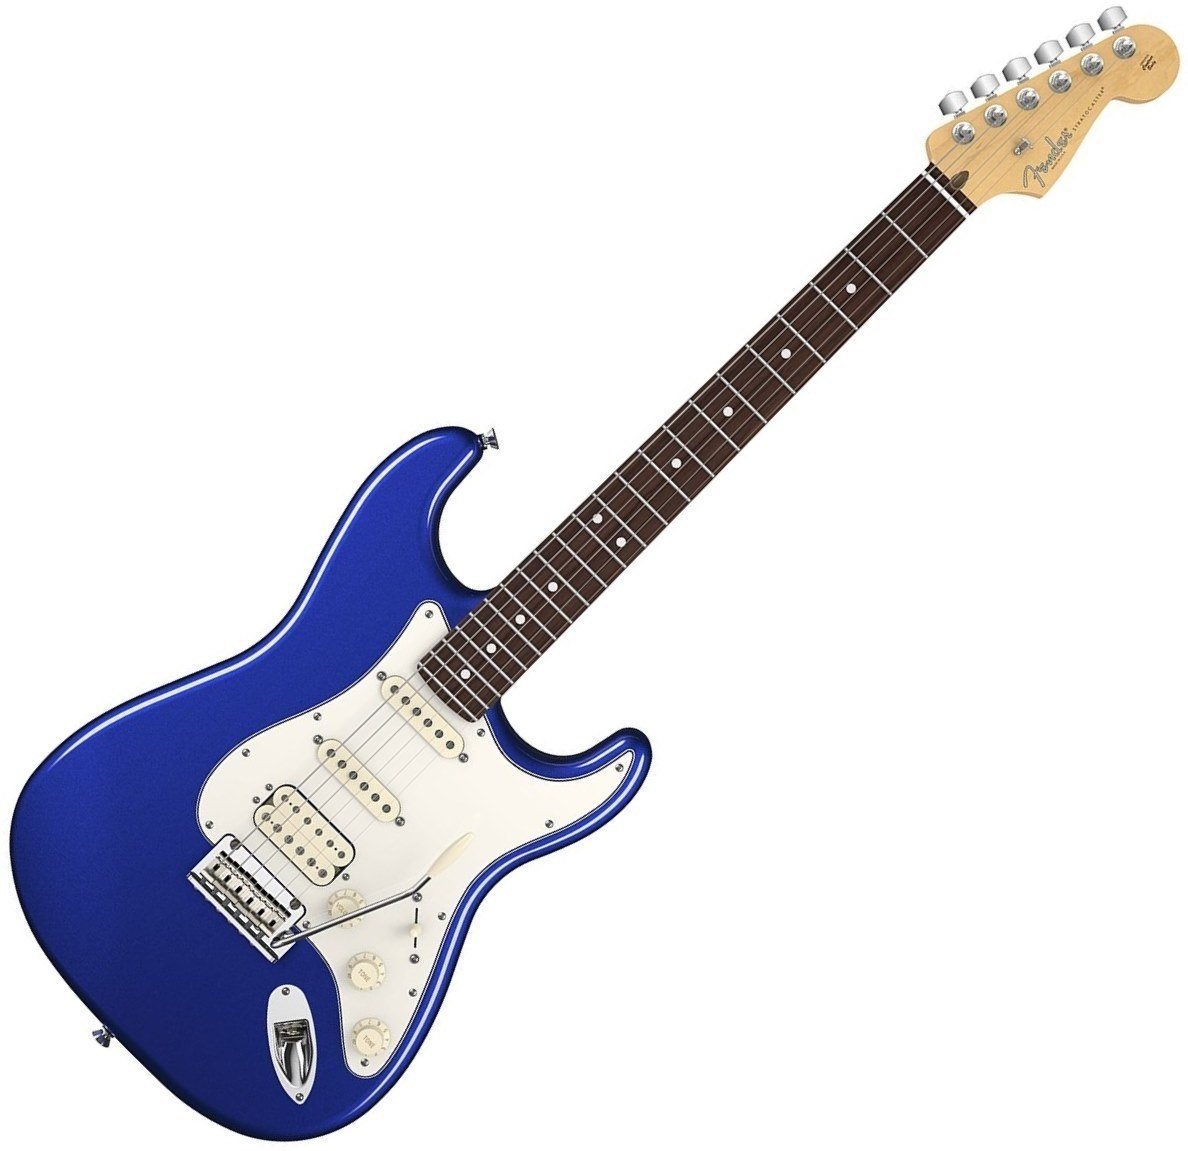 Ηλεκτρική Κιθάρα Fender American Standard Stratocaster, Rosewood Fingerboard, Mystic Blue